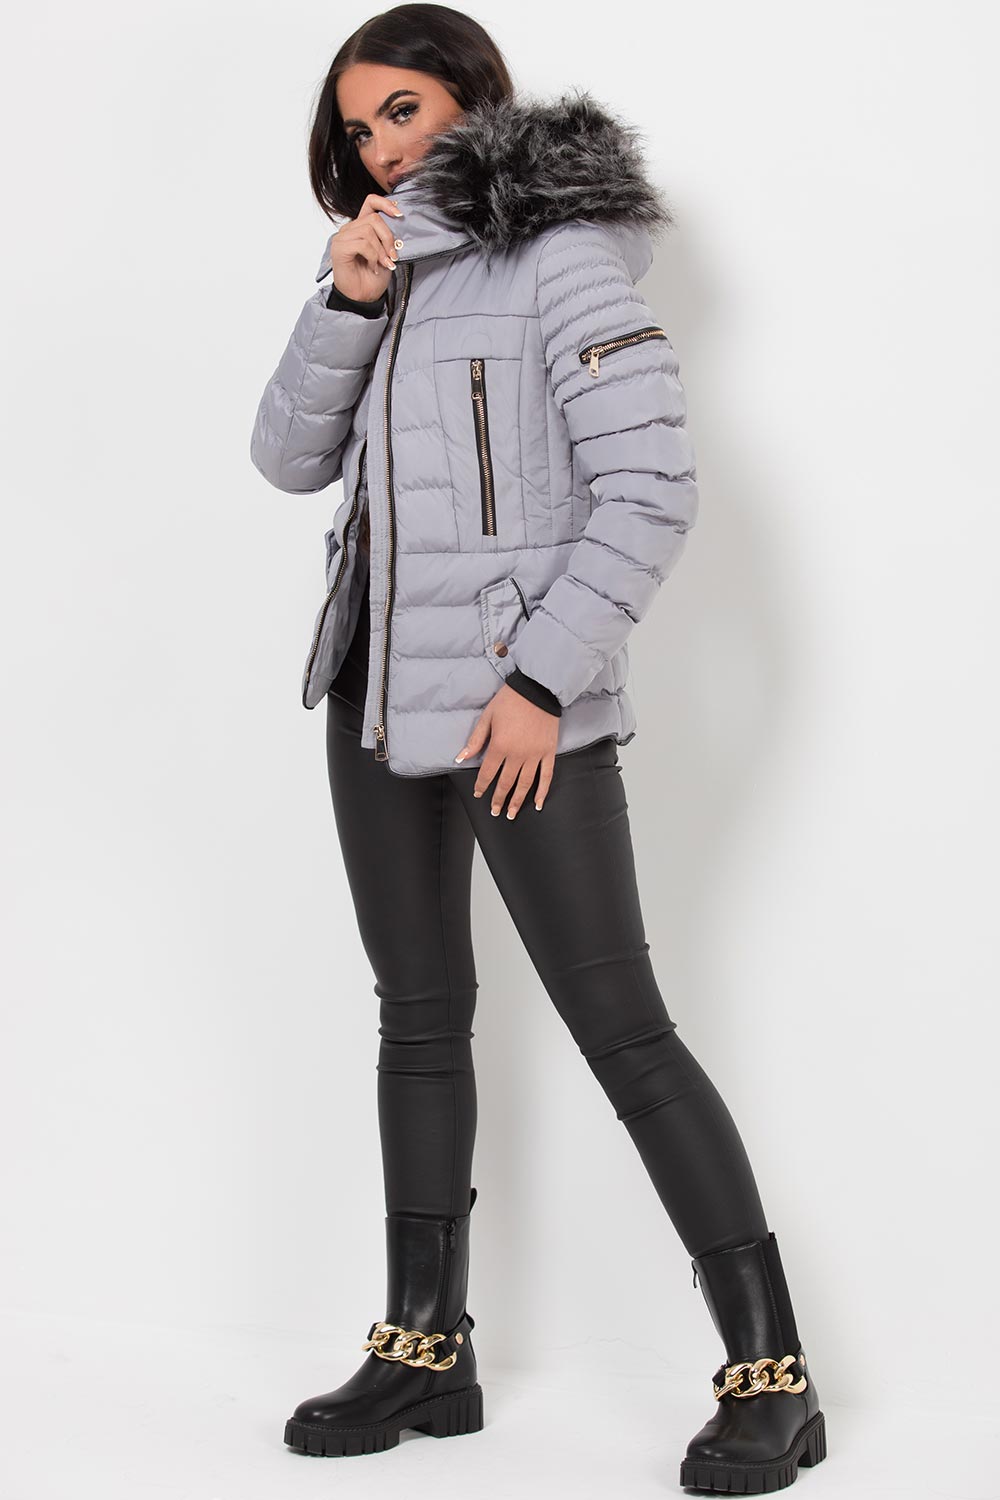 Women's Hooded Puffer Jacket Grey Winter Coat –